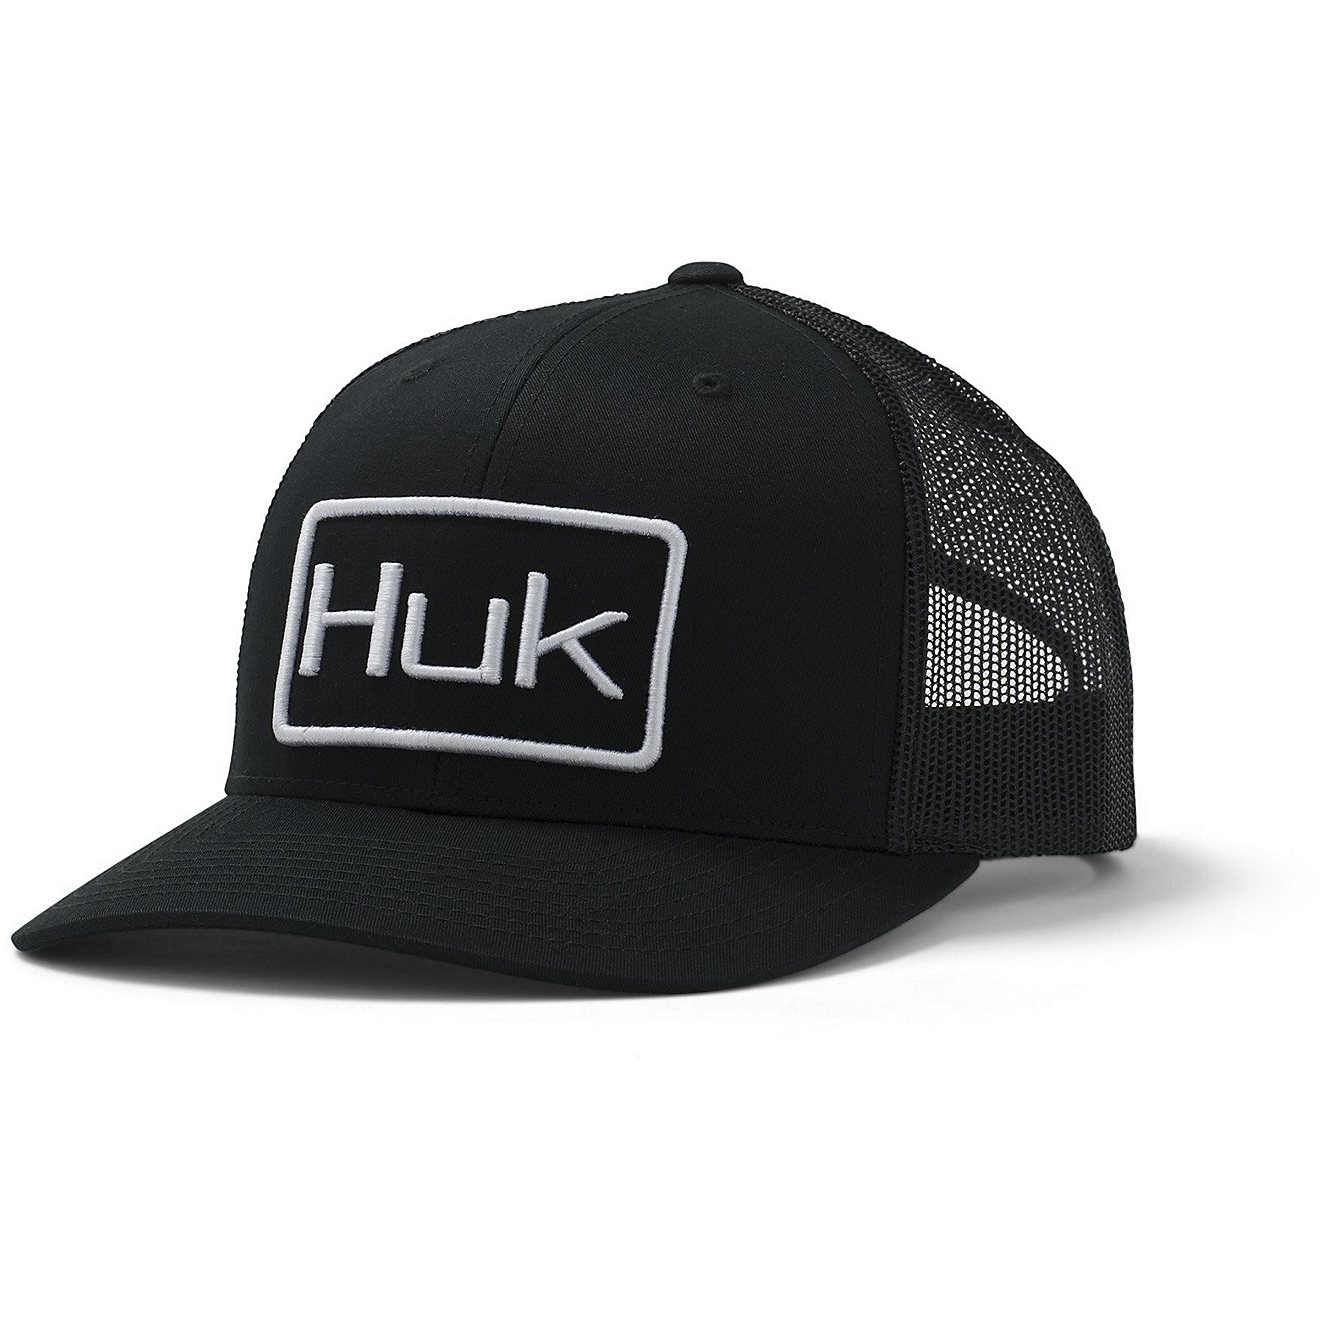 Huk Men's Angler Trucker Mesh Hat